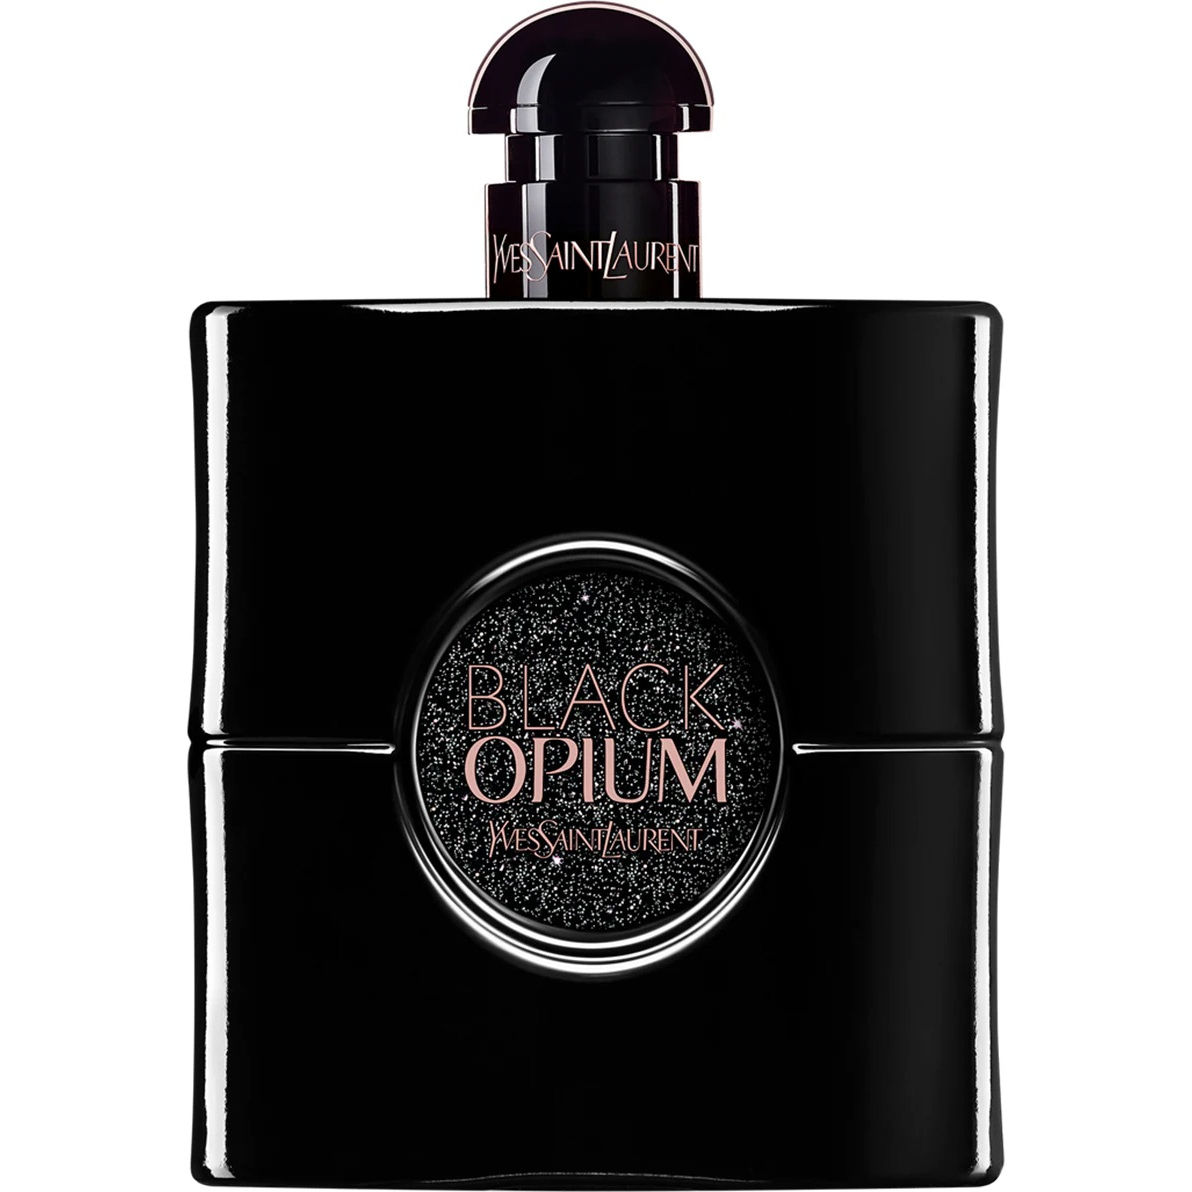 Yves Saint Laurent Black Opium Le Parfum Eau de parfum spray 50 ml